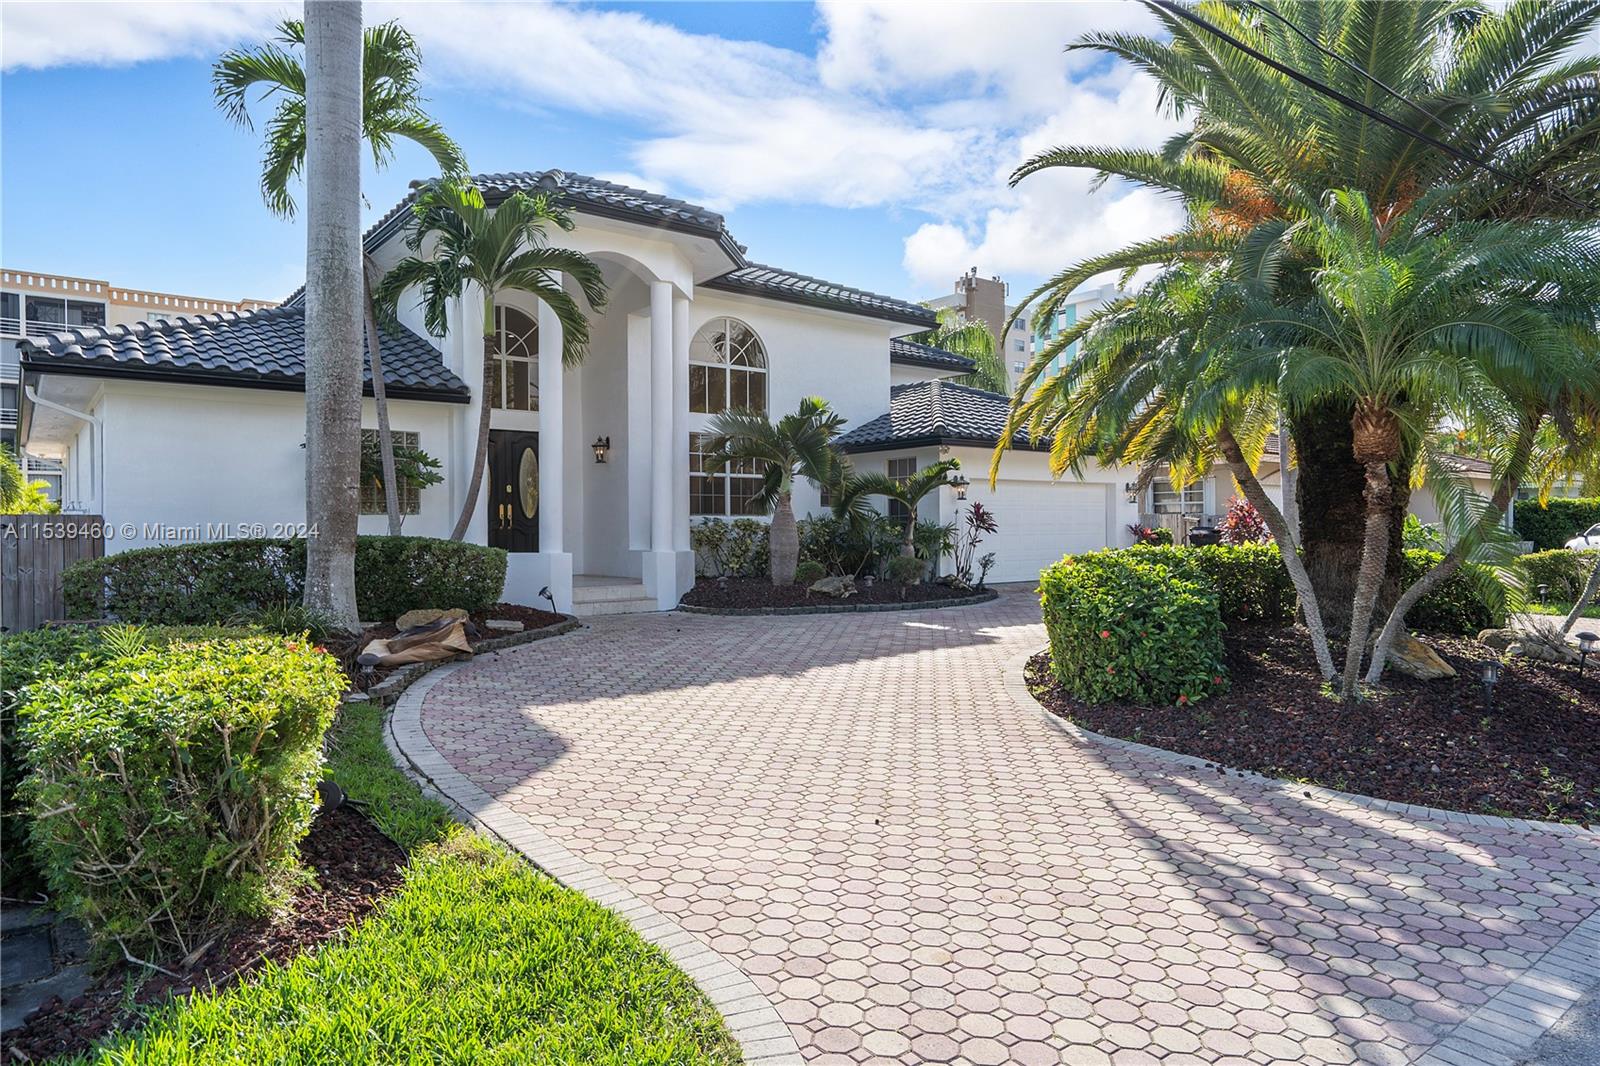 House for Sale in North Miami Beach, FL